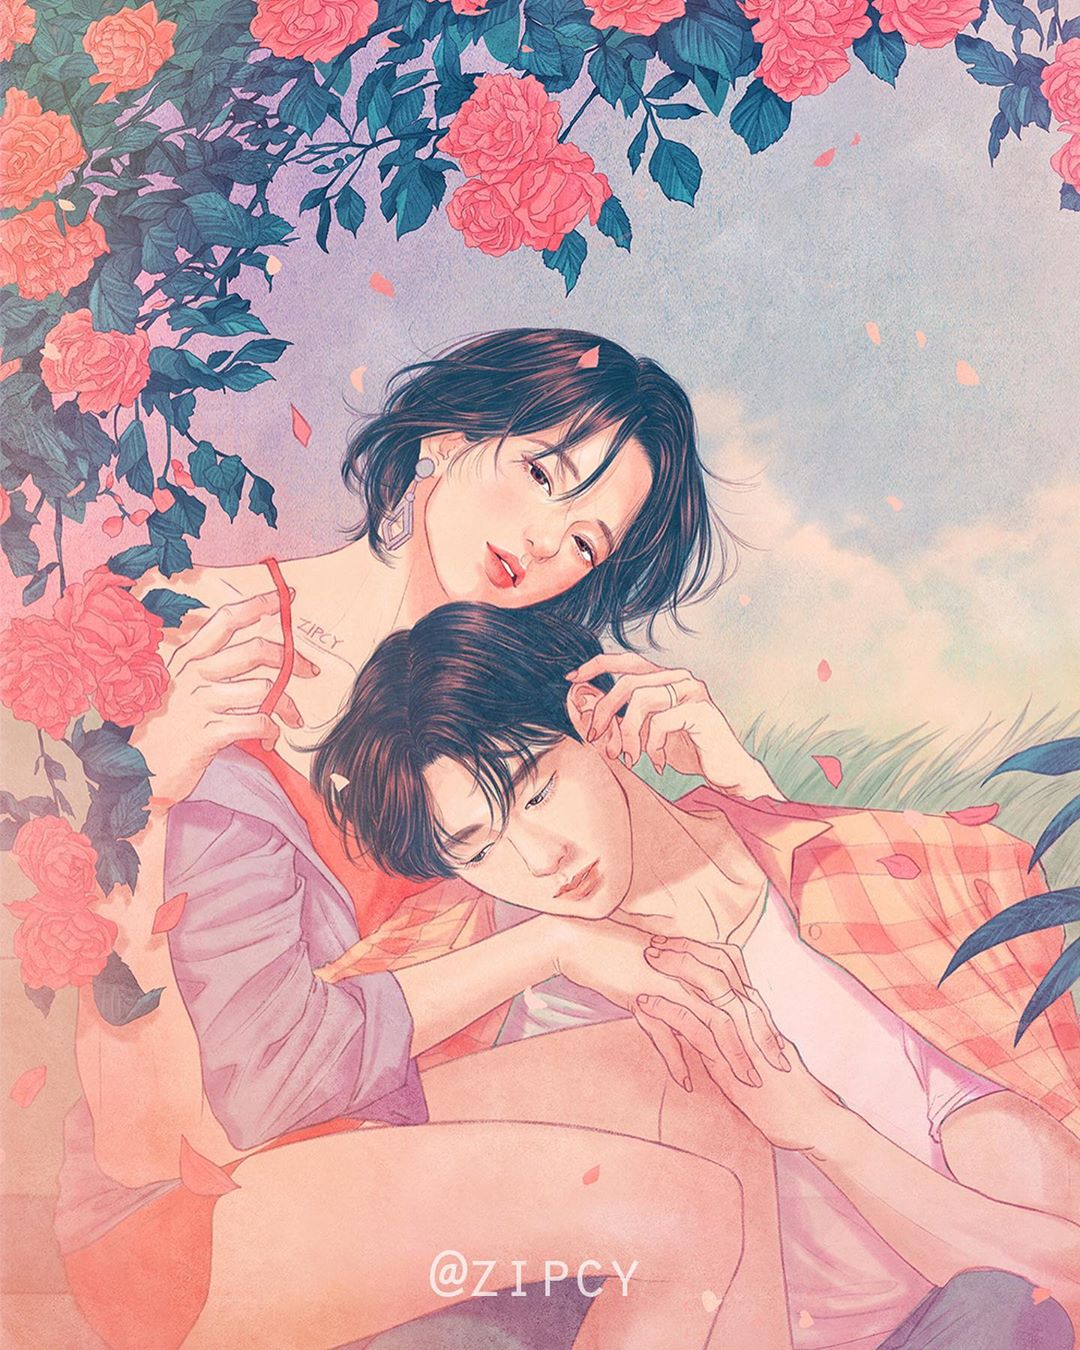 韩国插画家Zipcy心动撩人的情侣插画